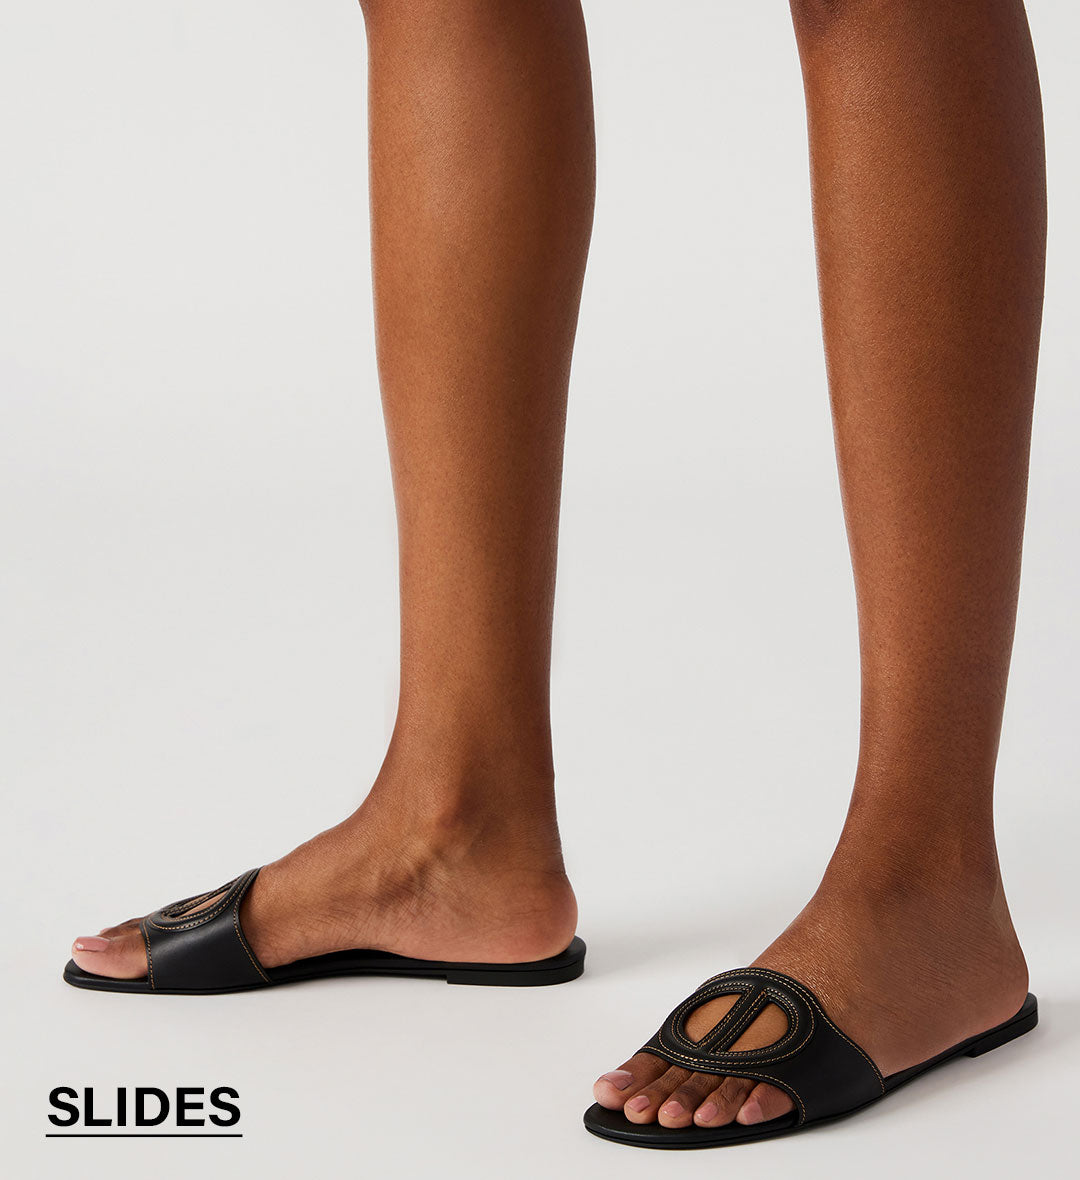 Women's Sandals, Steve Madden Sandals